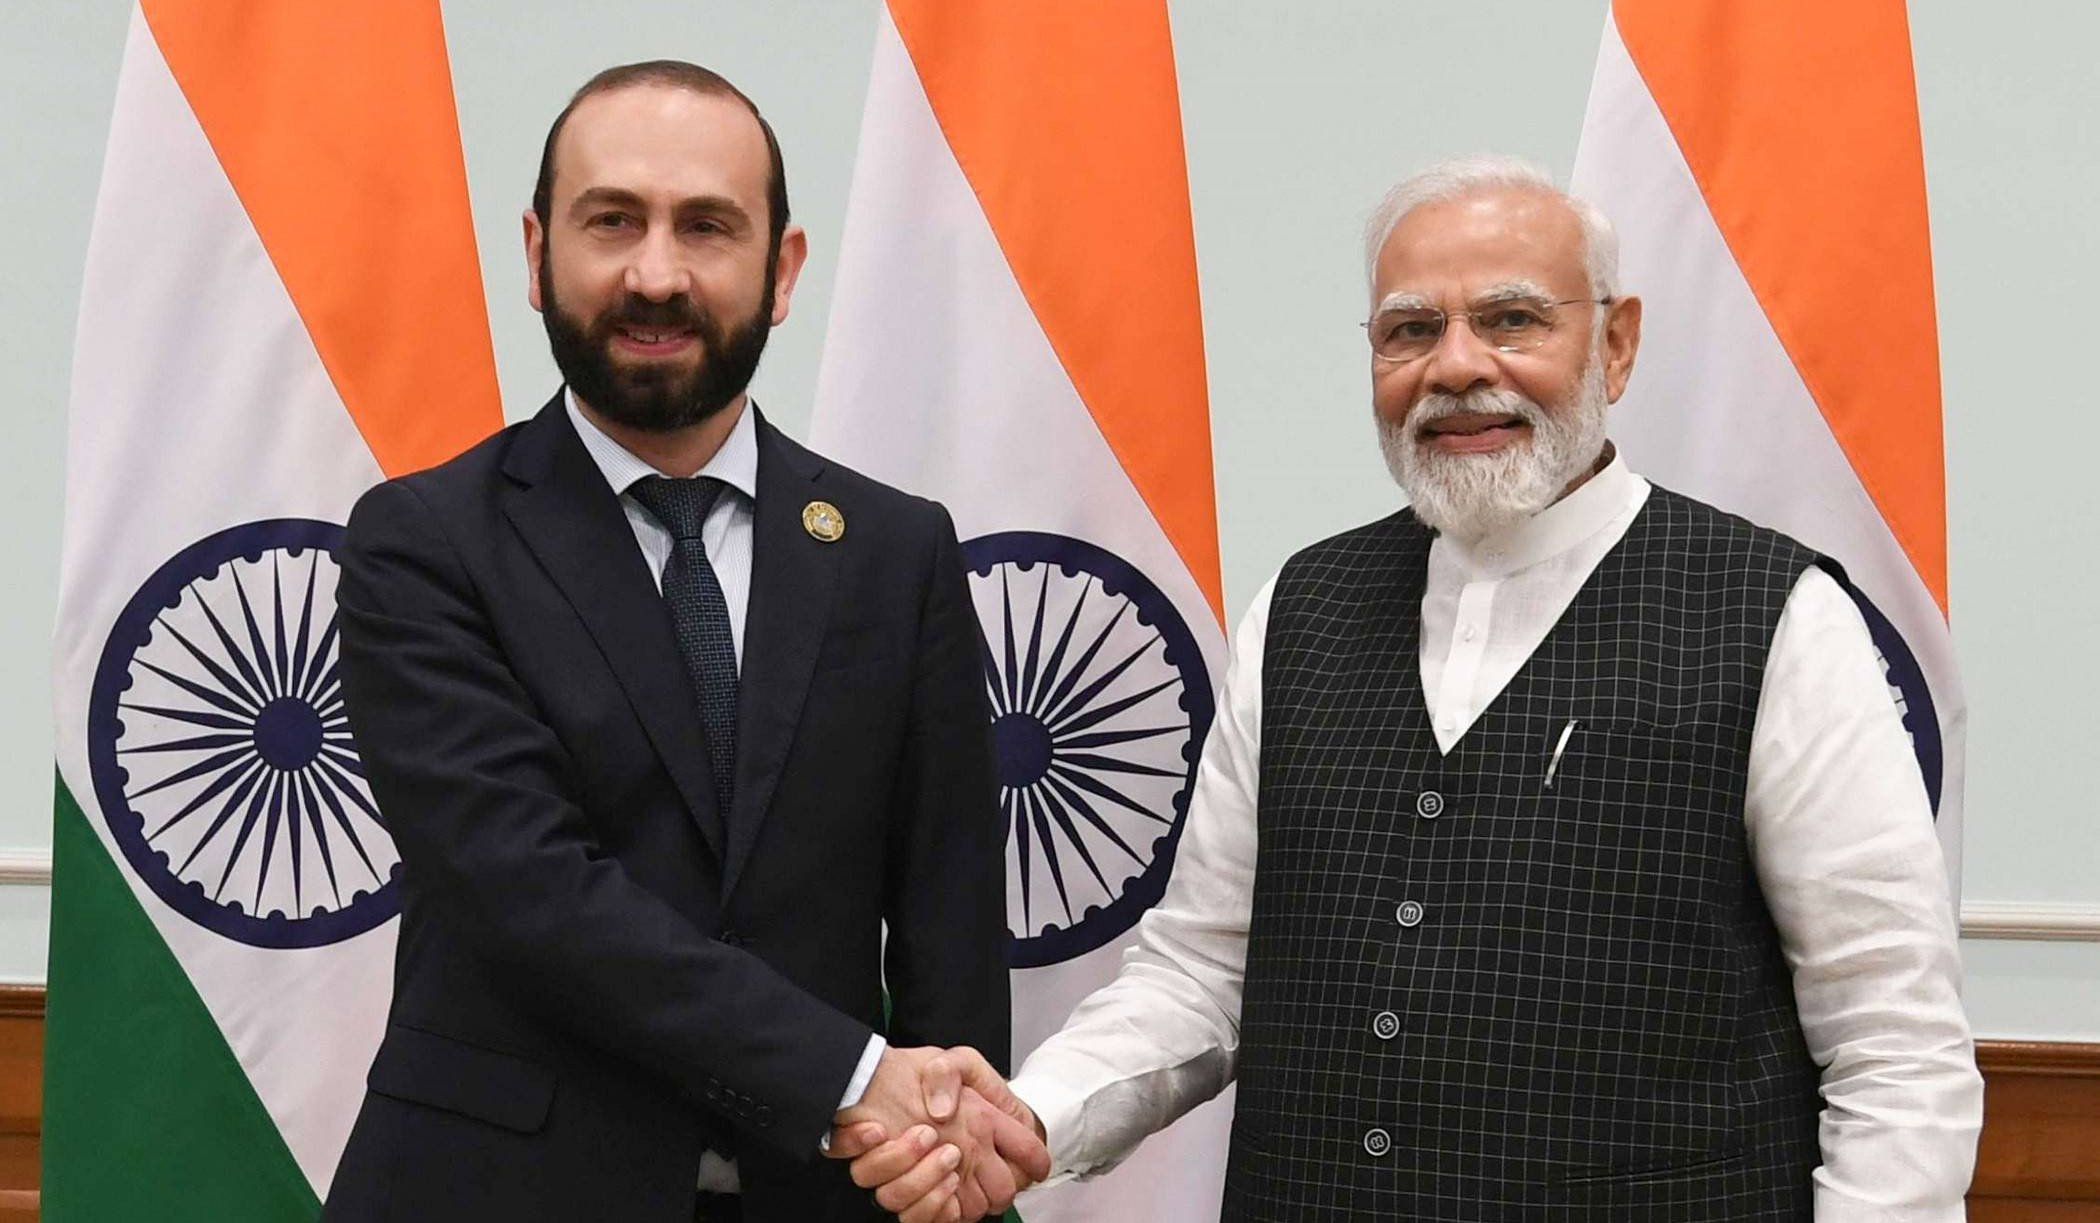 ՀՀ ԱԳ նախարարը հանդիպում է ունեցել Հնդկաստանի վարչապետի հետ